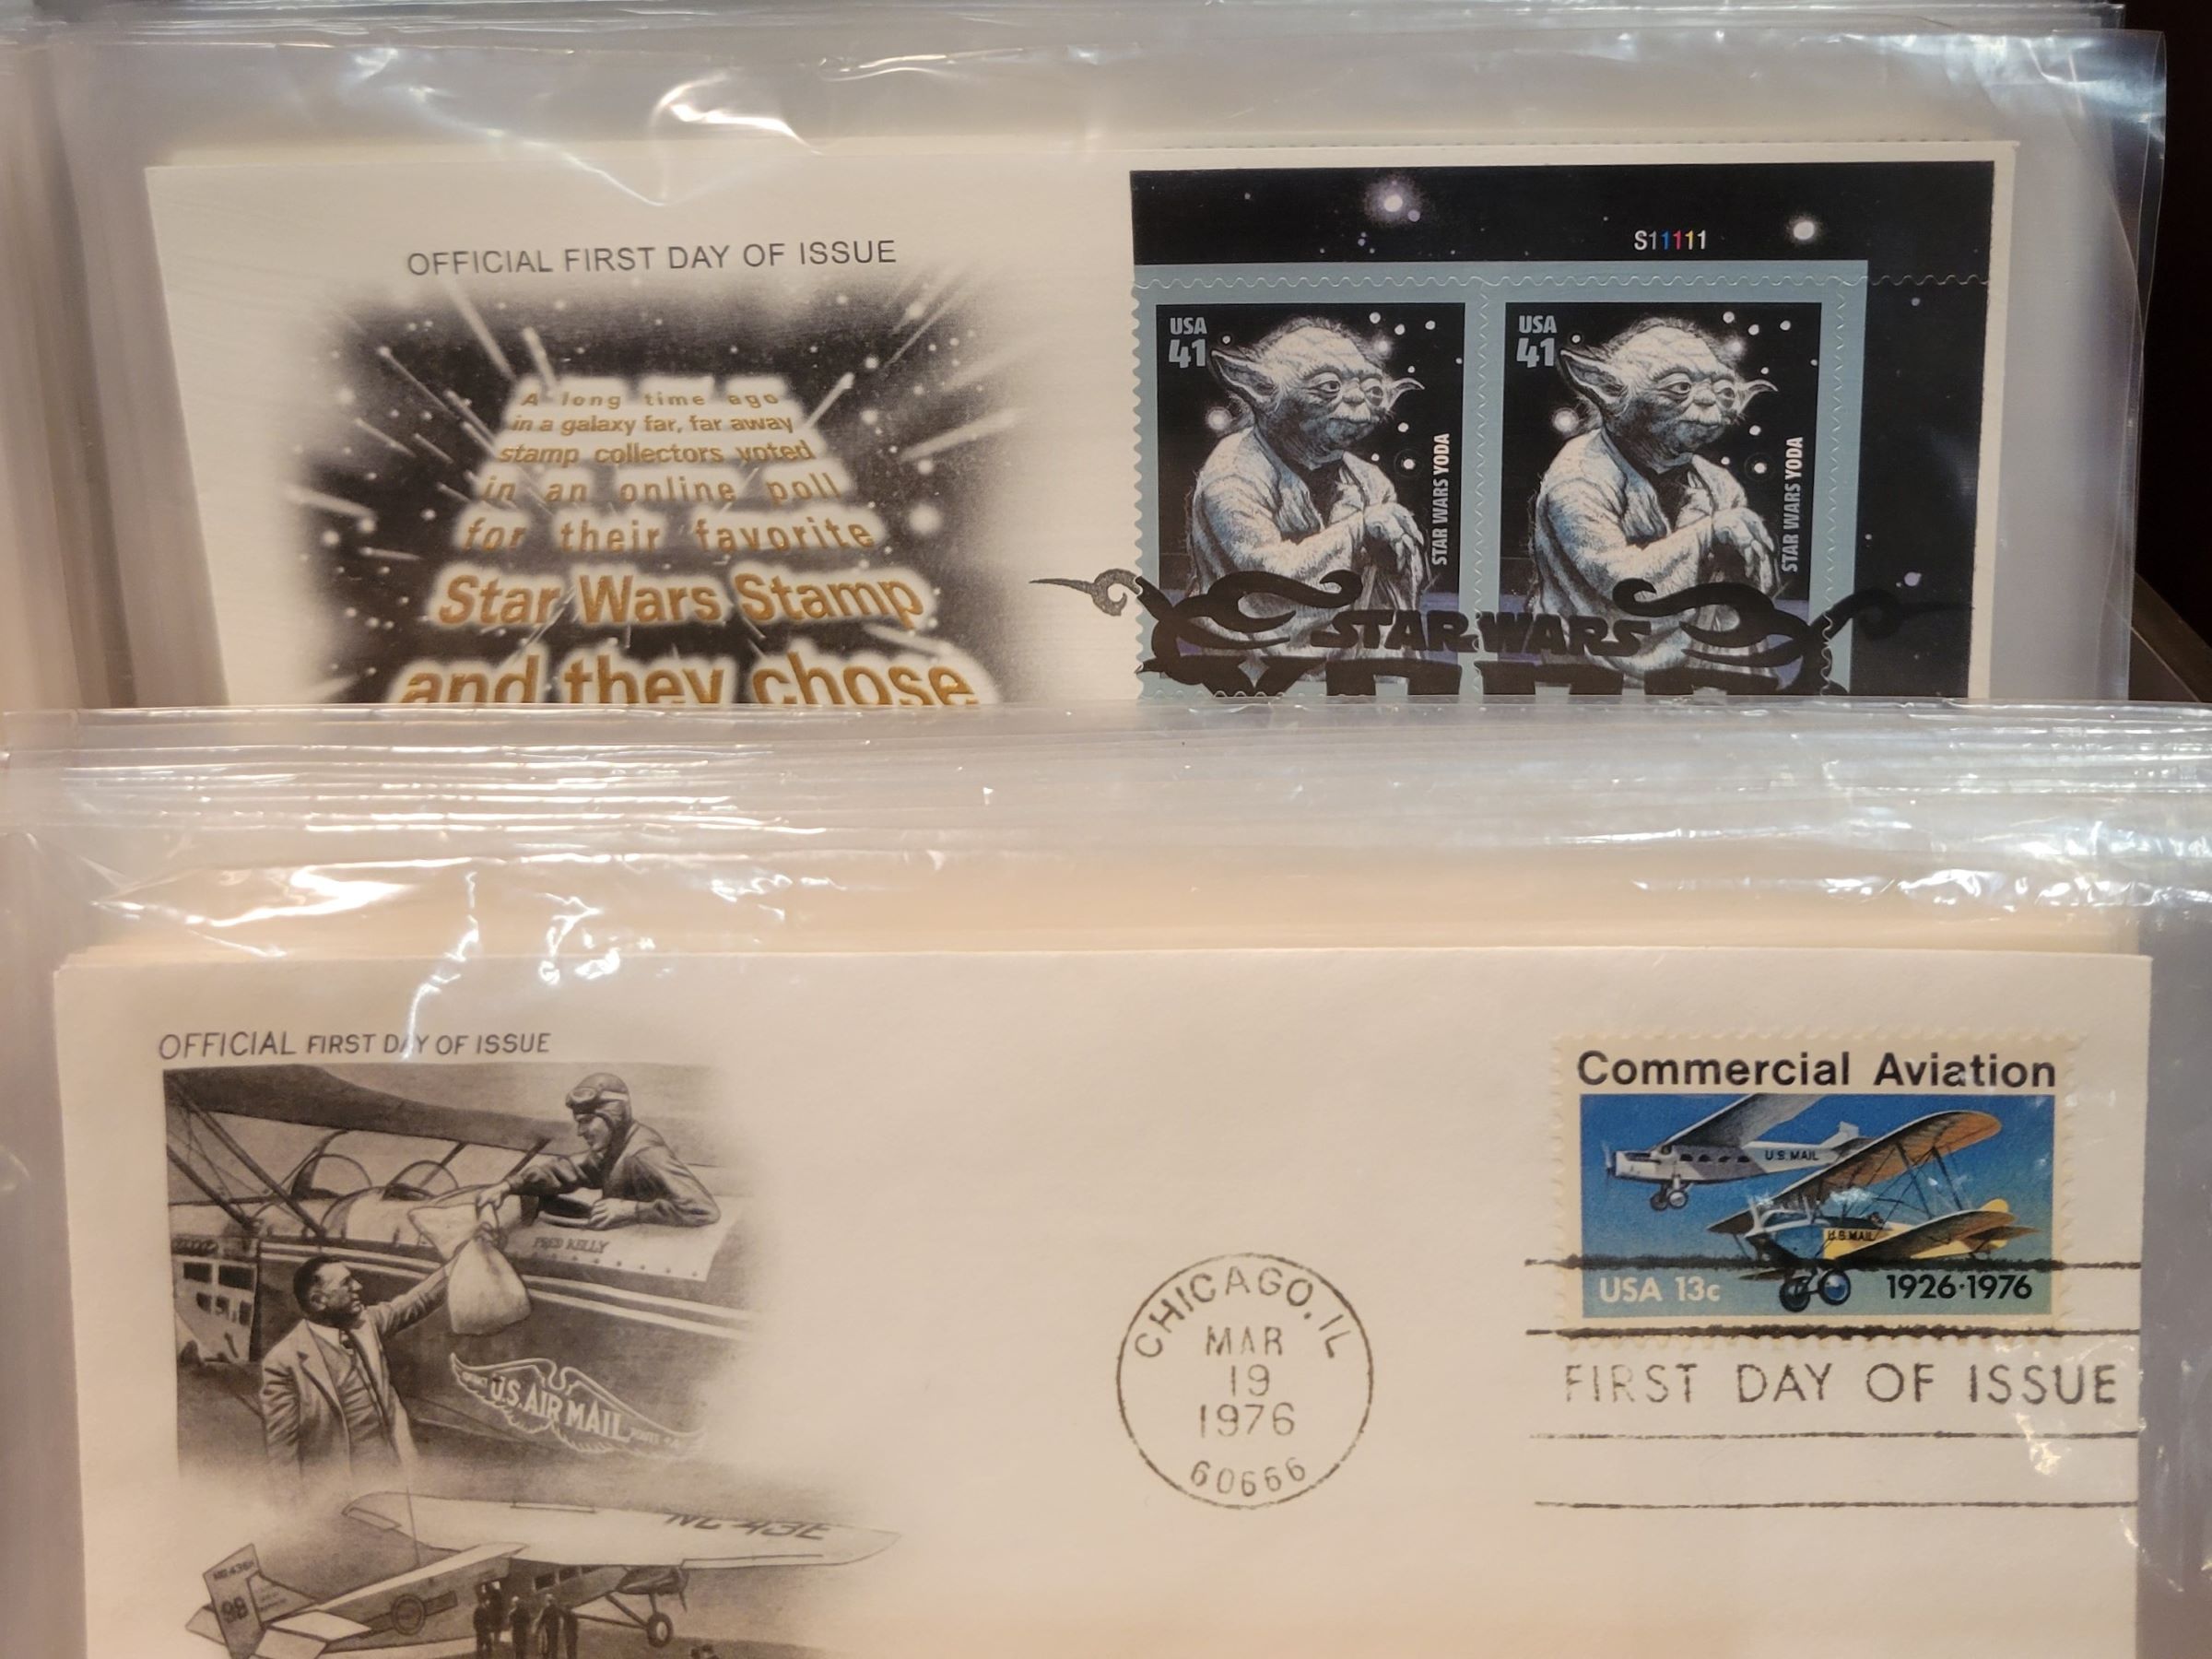 워싱턴DC의 스미소니언 우편박물관에서는 사용된 미국 우표를 6장까지 공짜로 가져가실 수 있어요~